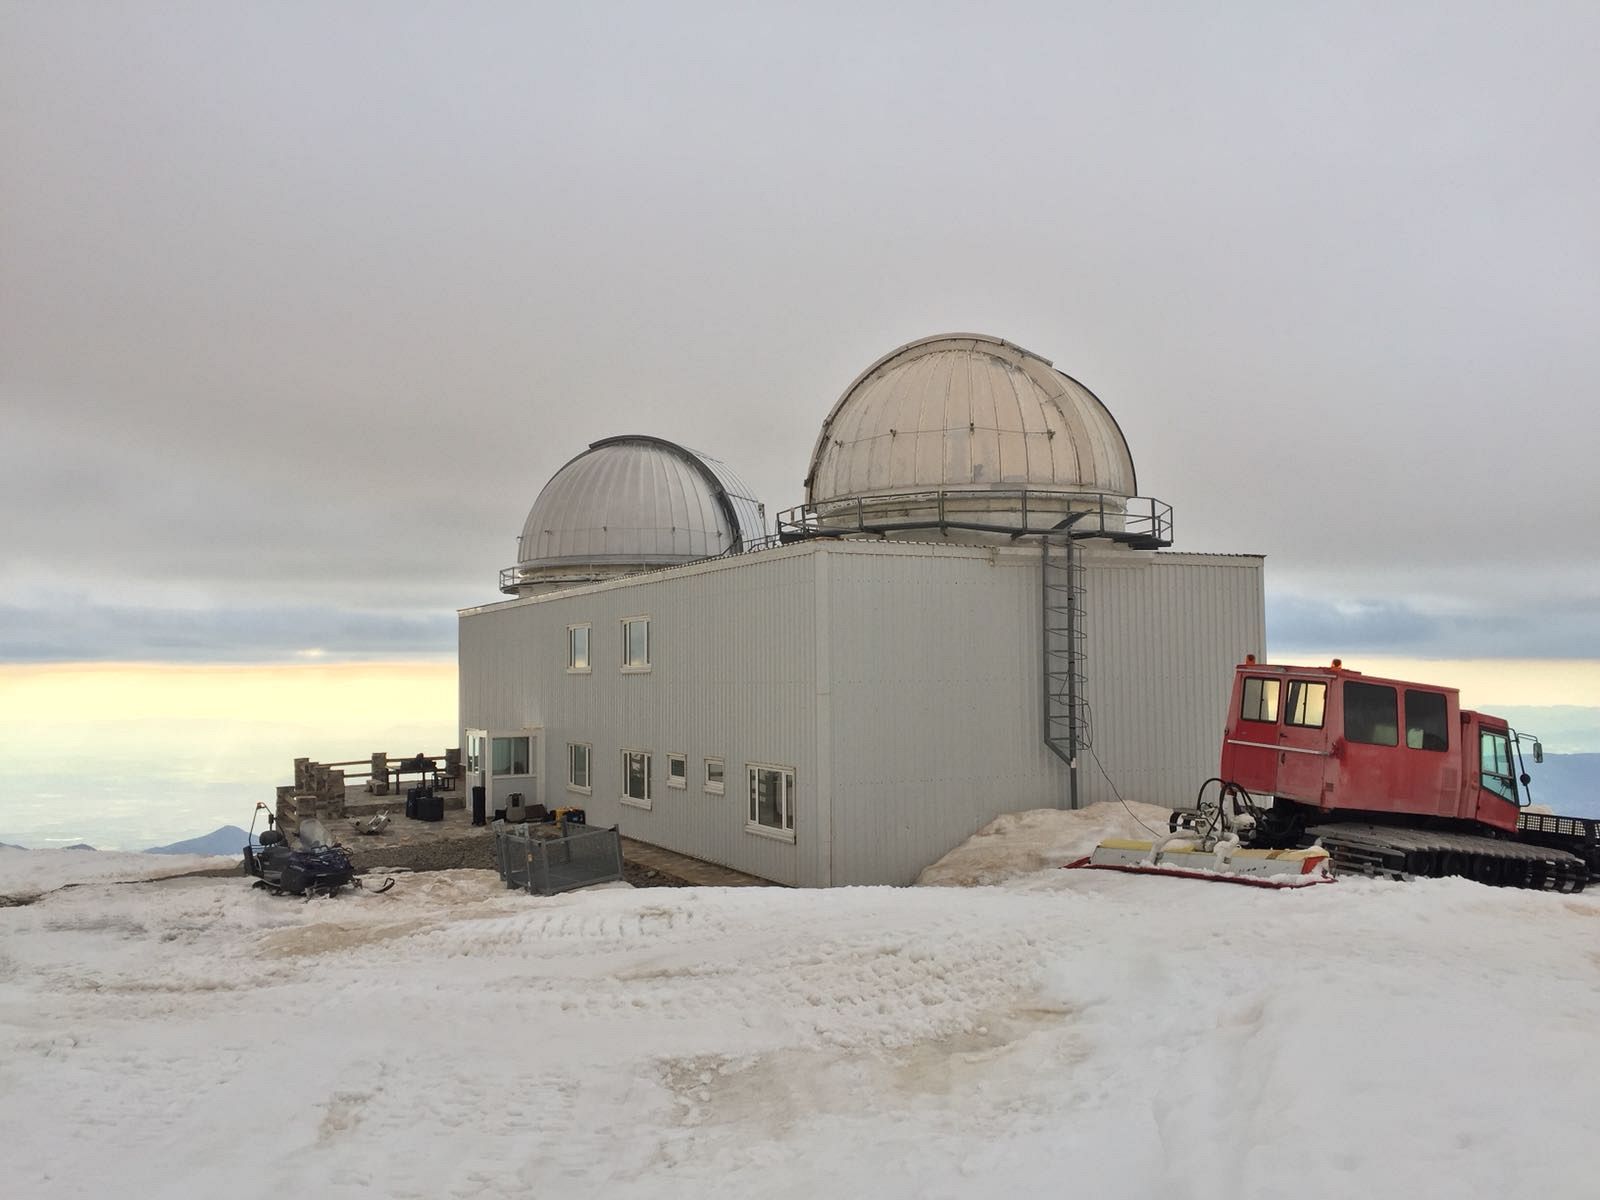 Lab24 - El observatorio de alta montaña